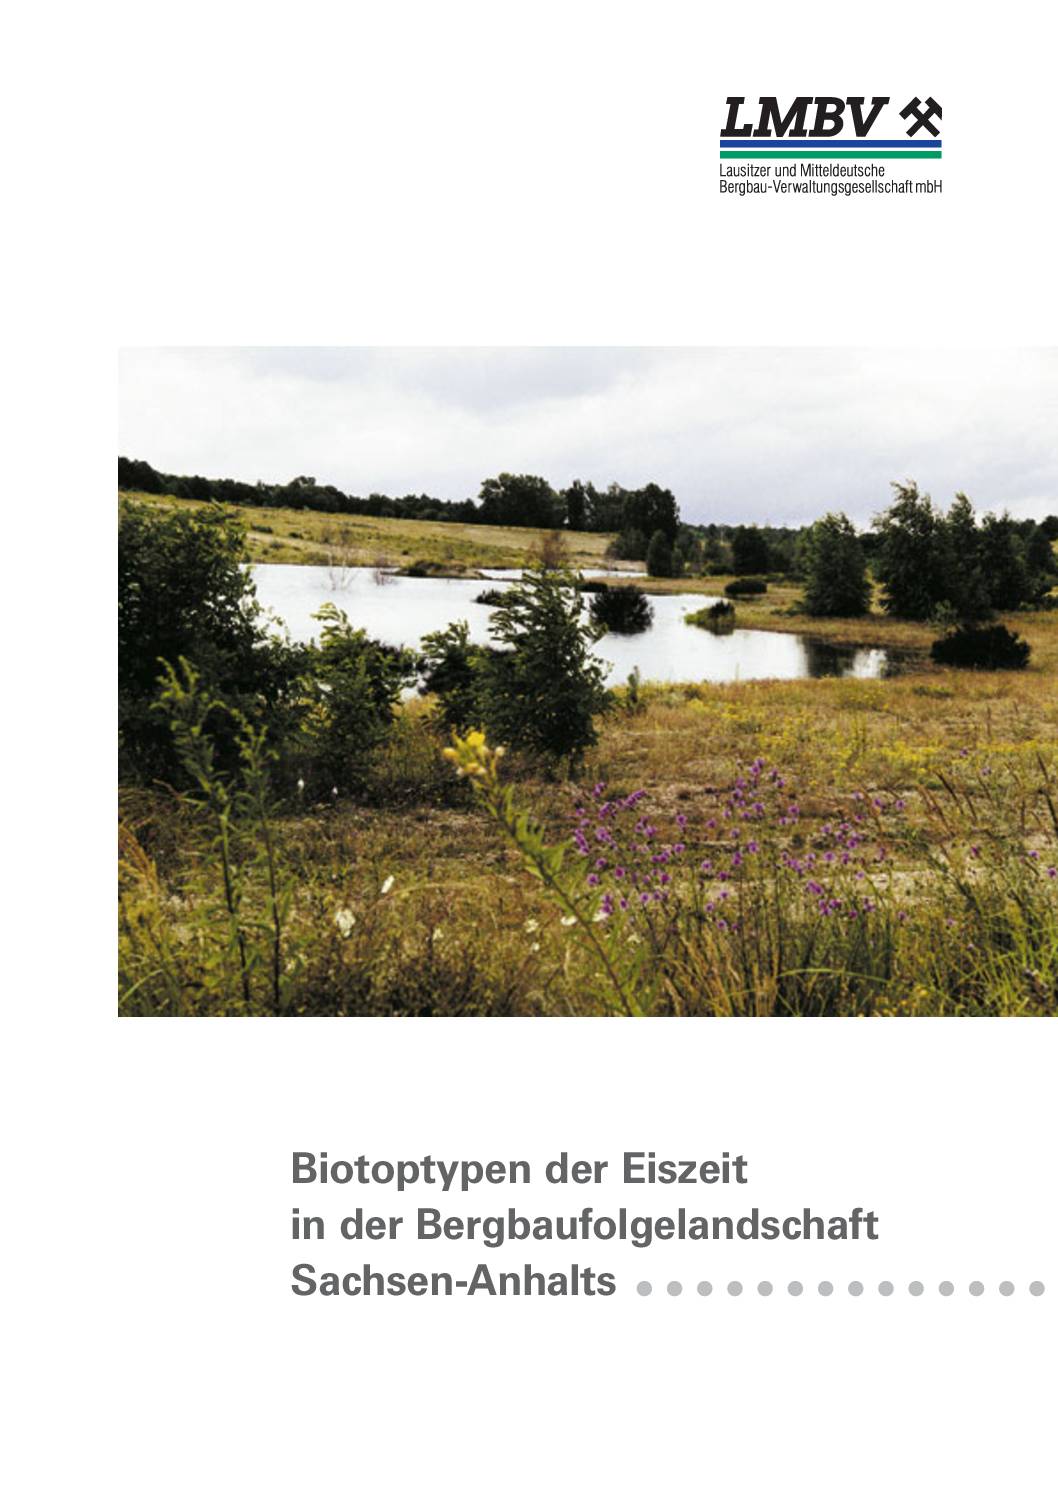 Biotoptypen der Eiszeit Sachsen Anhalts 2002 pdf